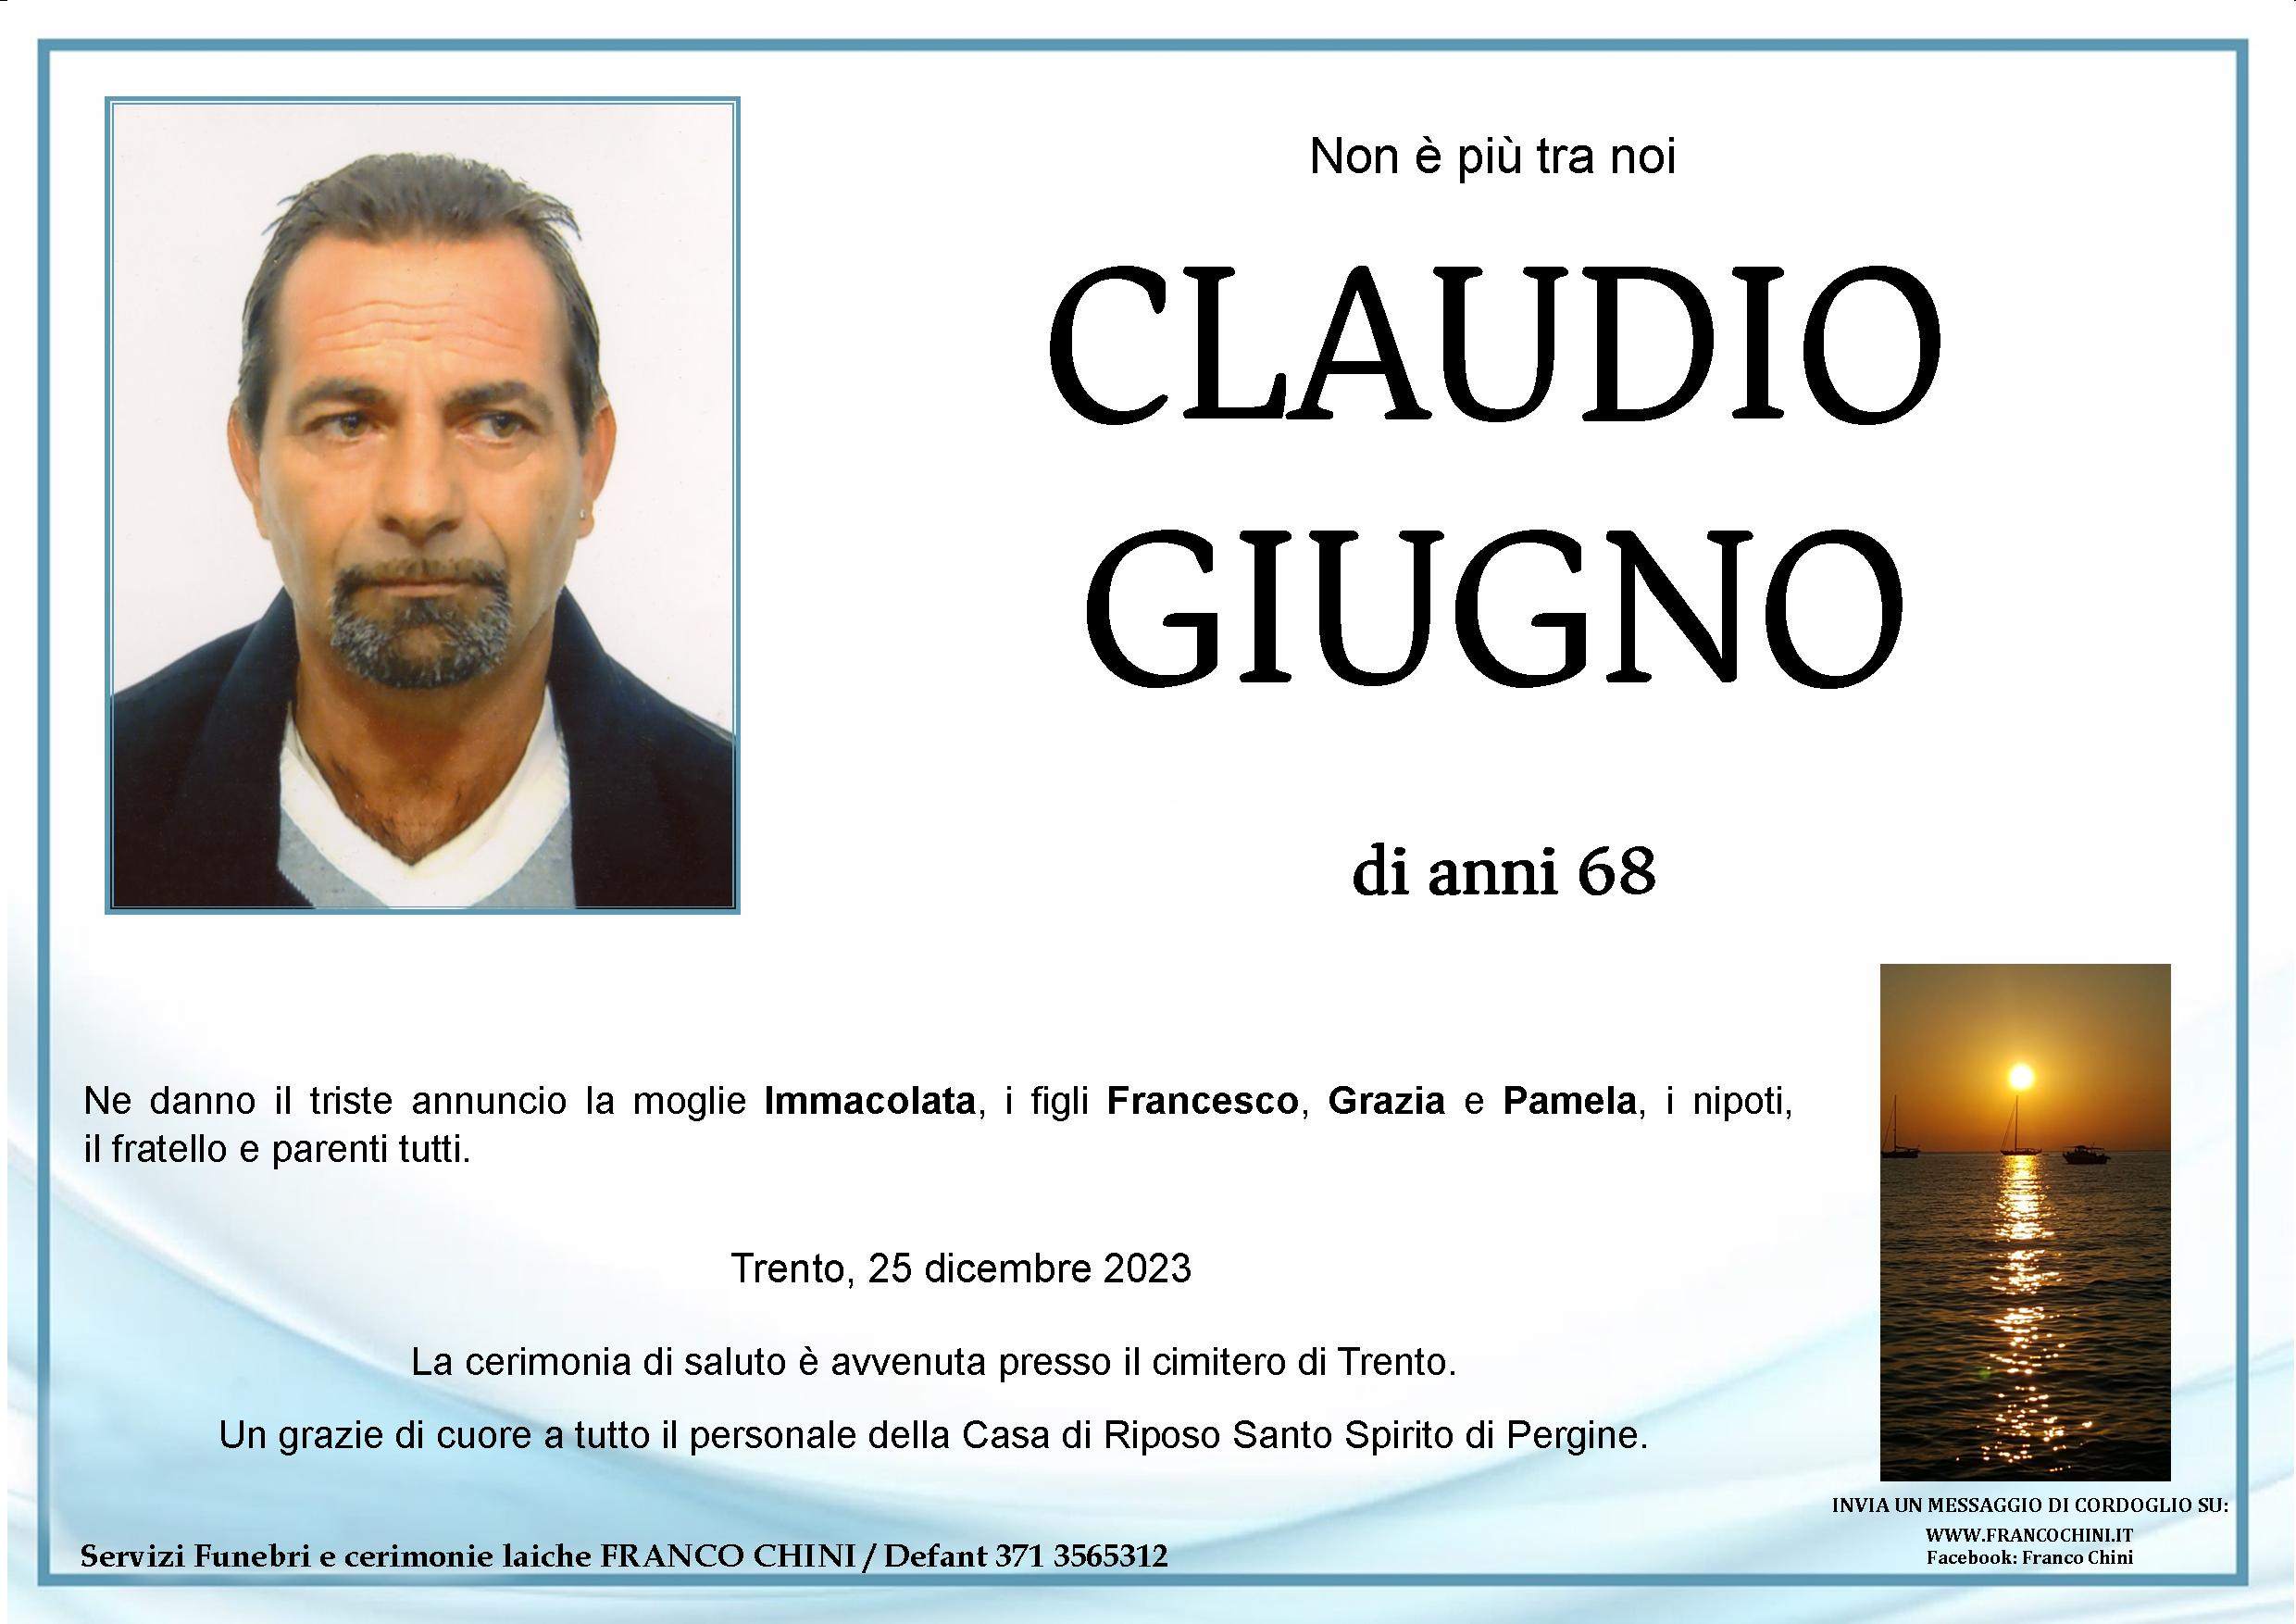 Claudio Giugno